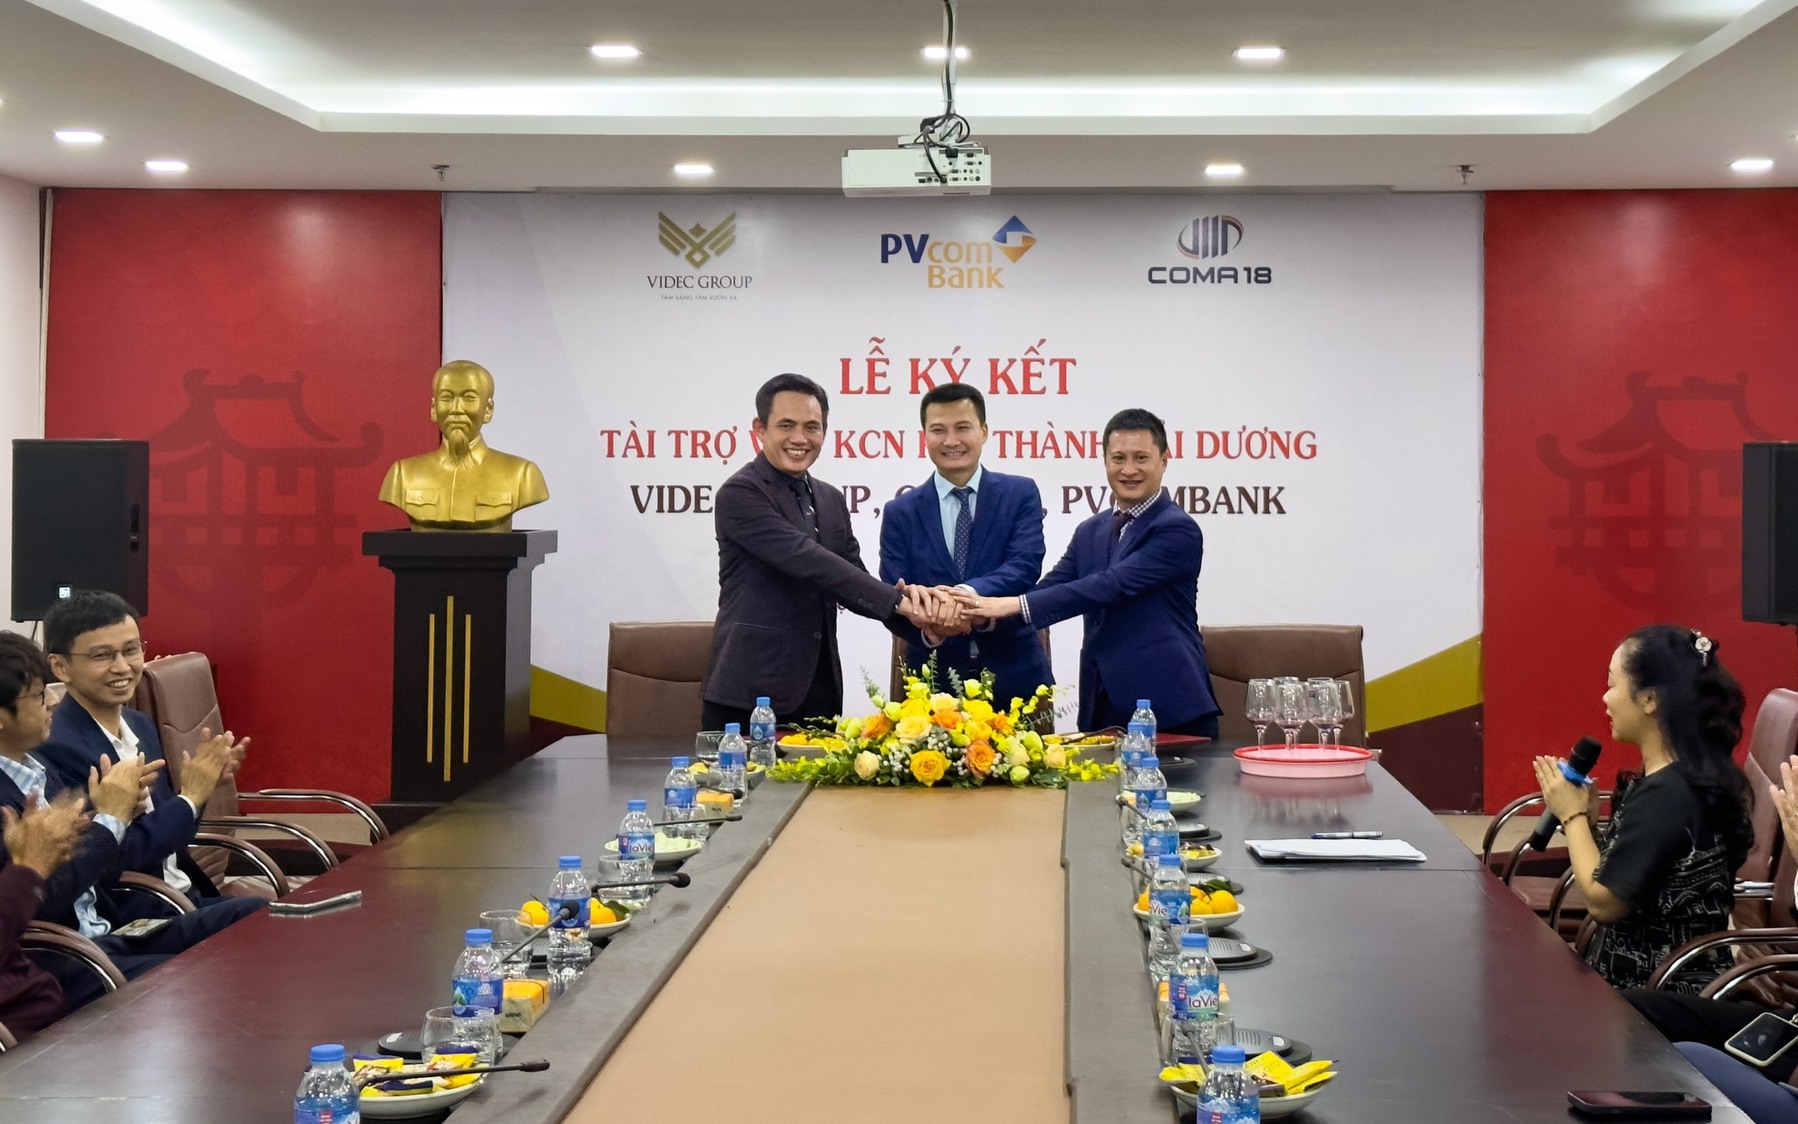 PVcombank tài trợ vốn cho khu công nghiệp Kim Thành của COMA18